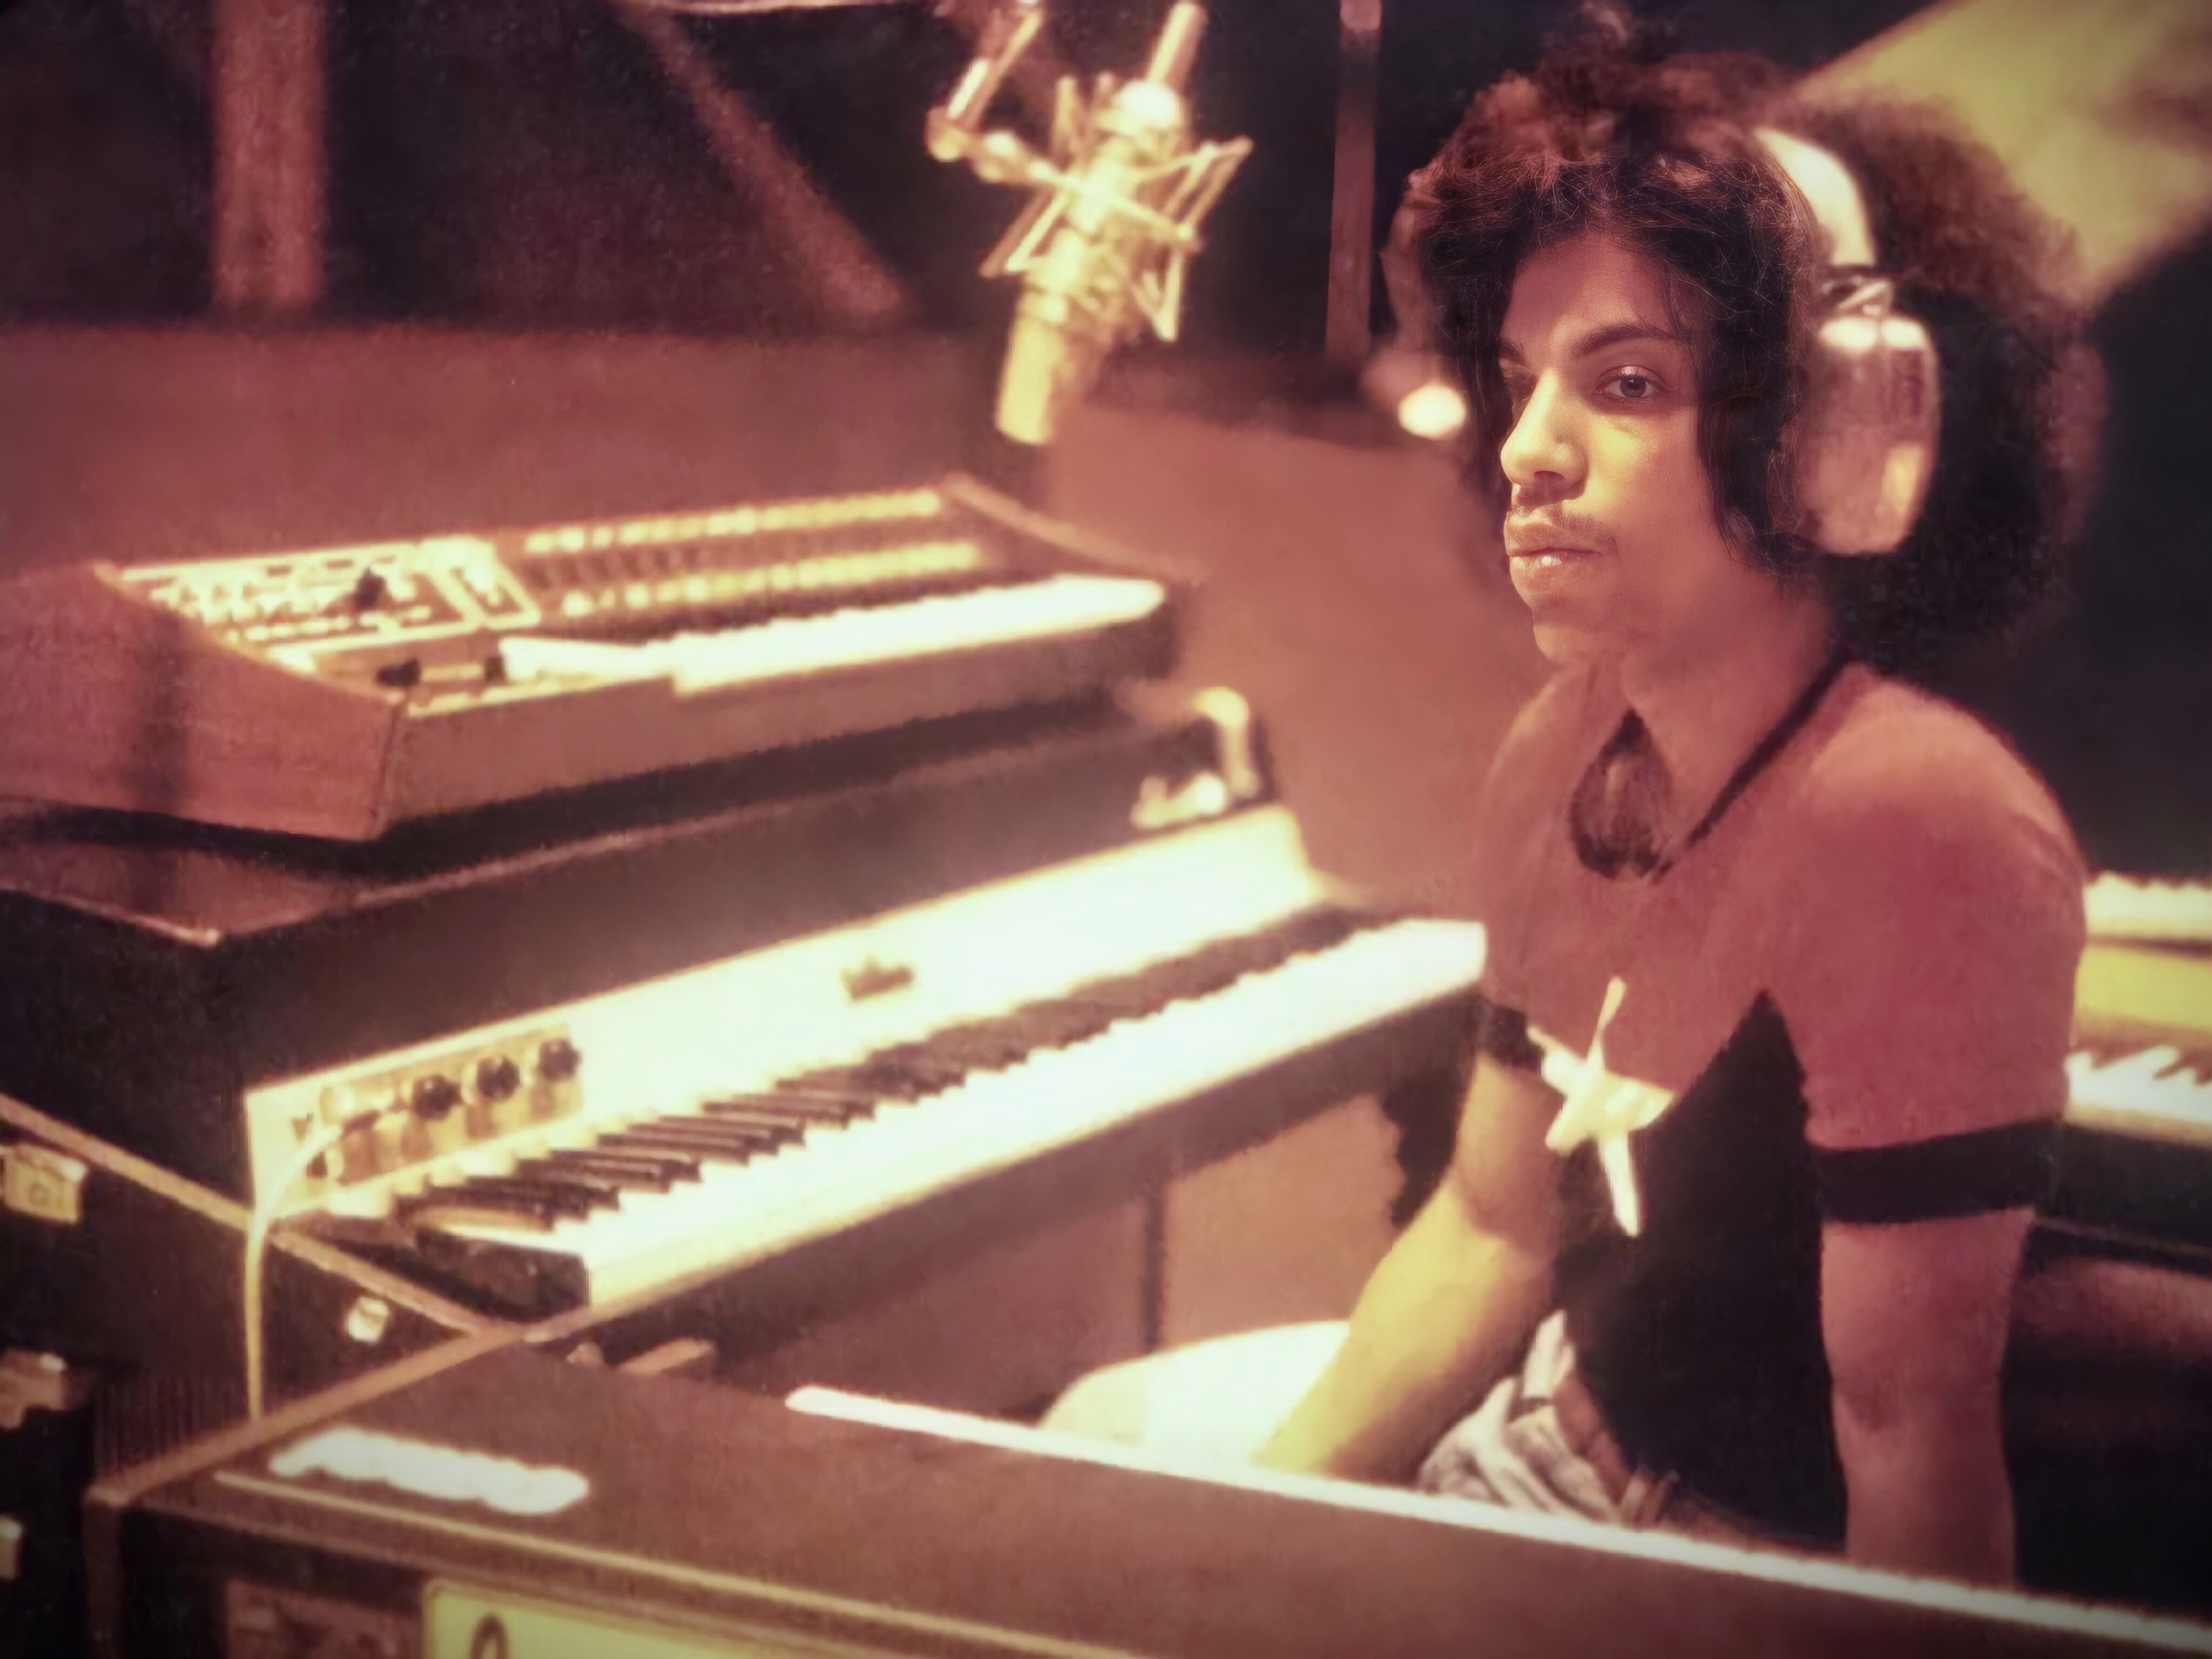 Prince in the recording studio in 1977